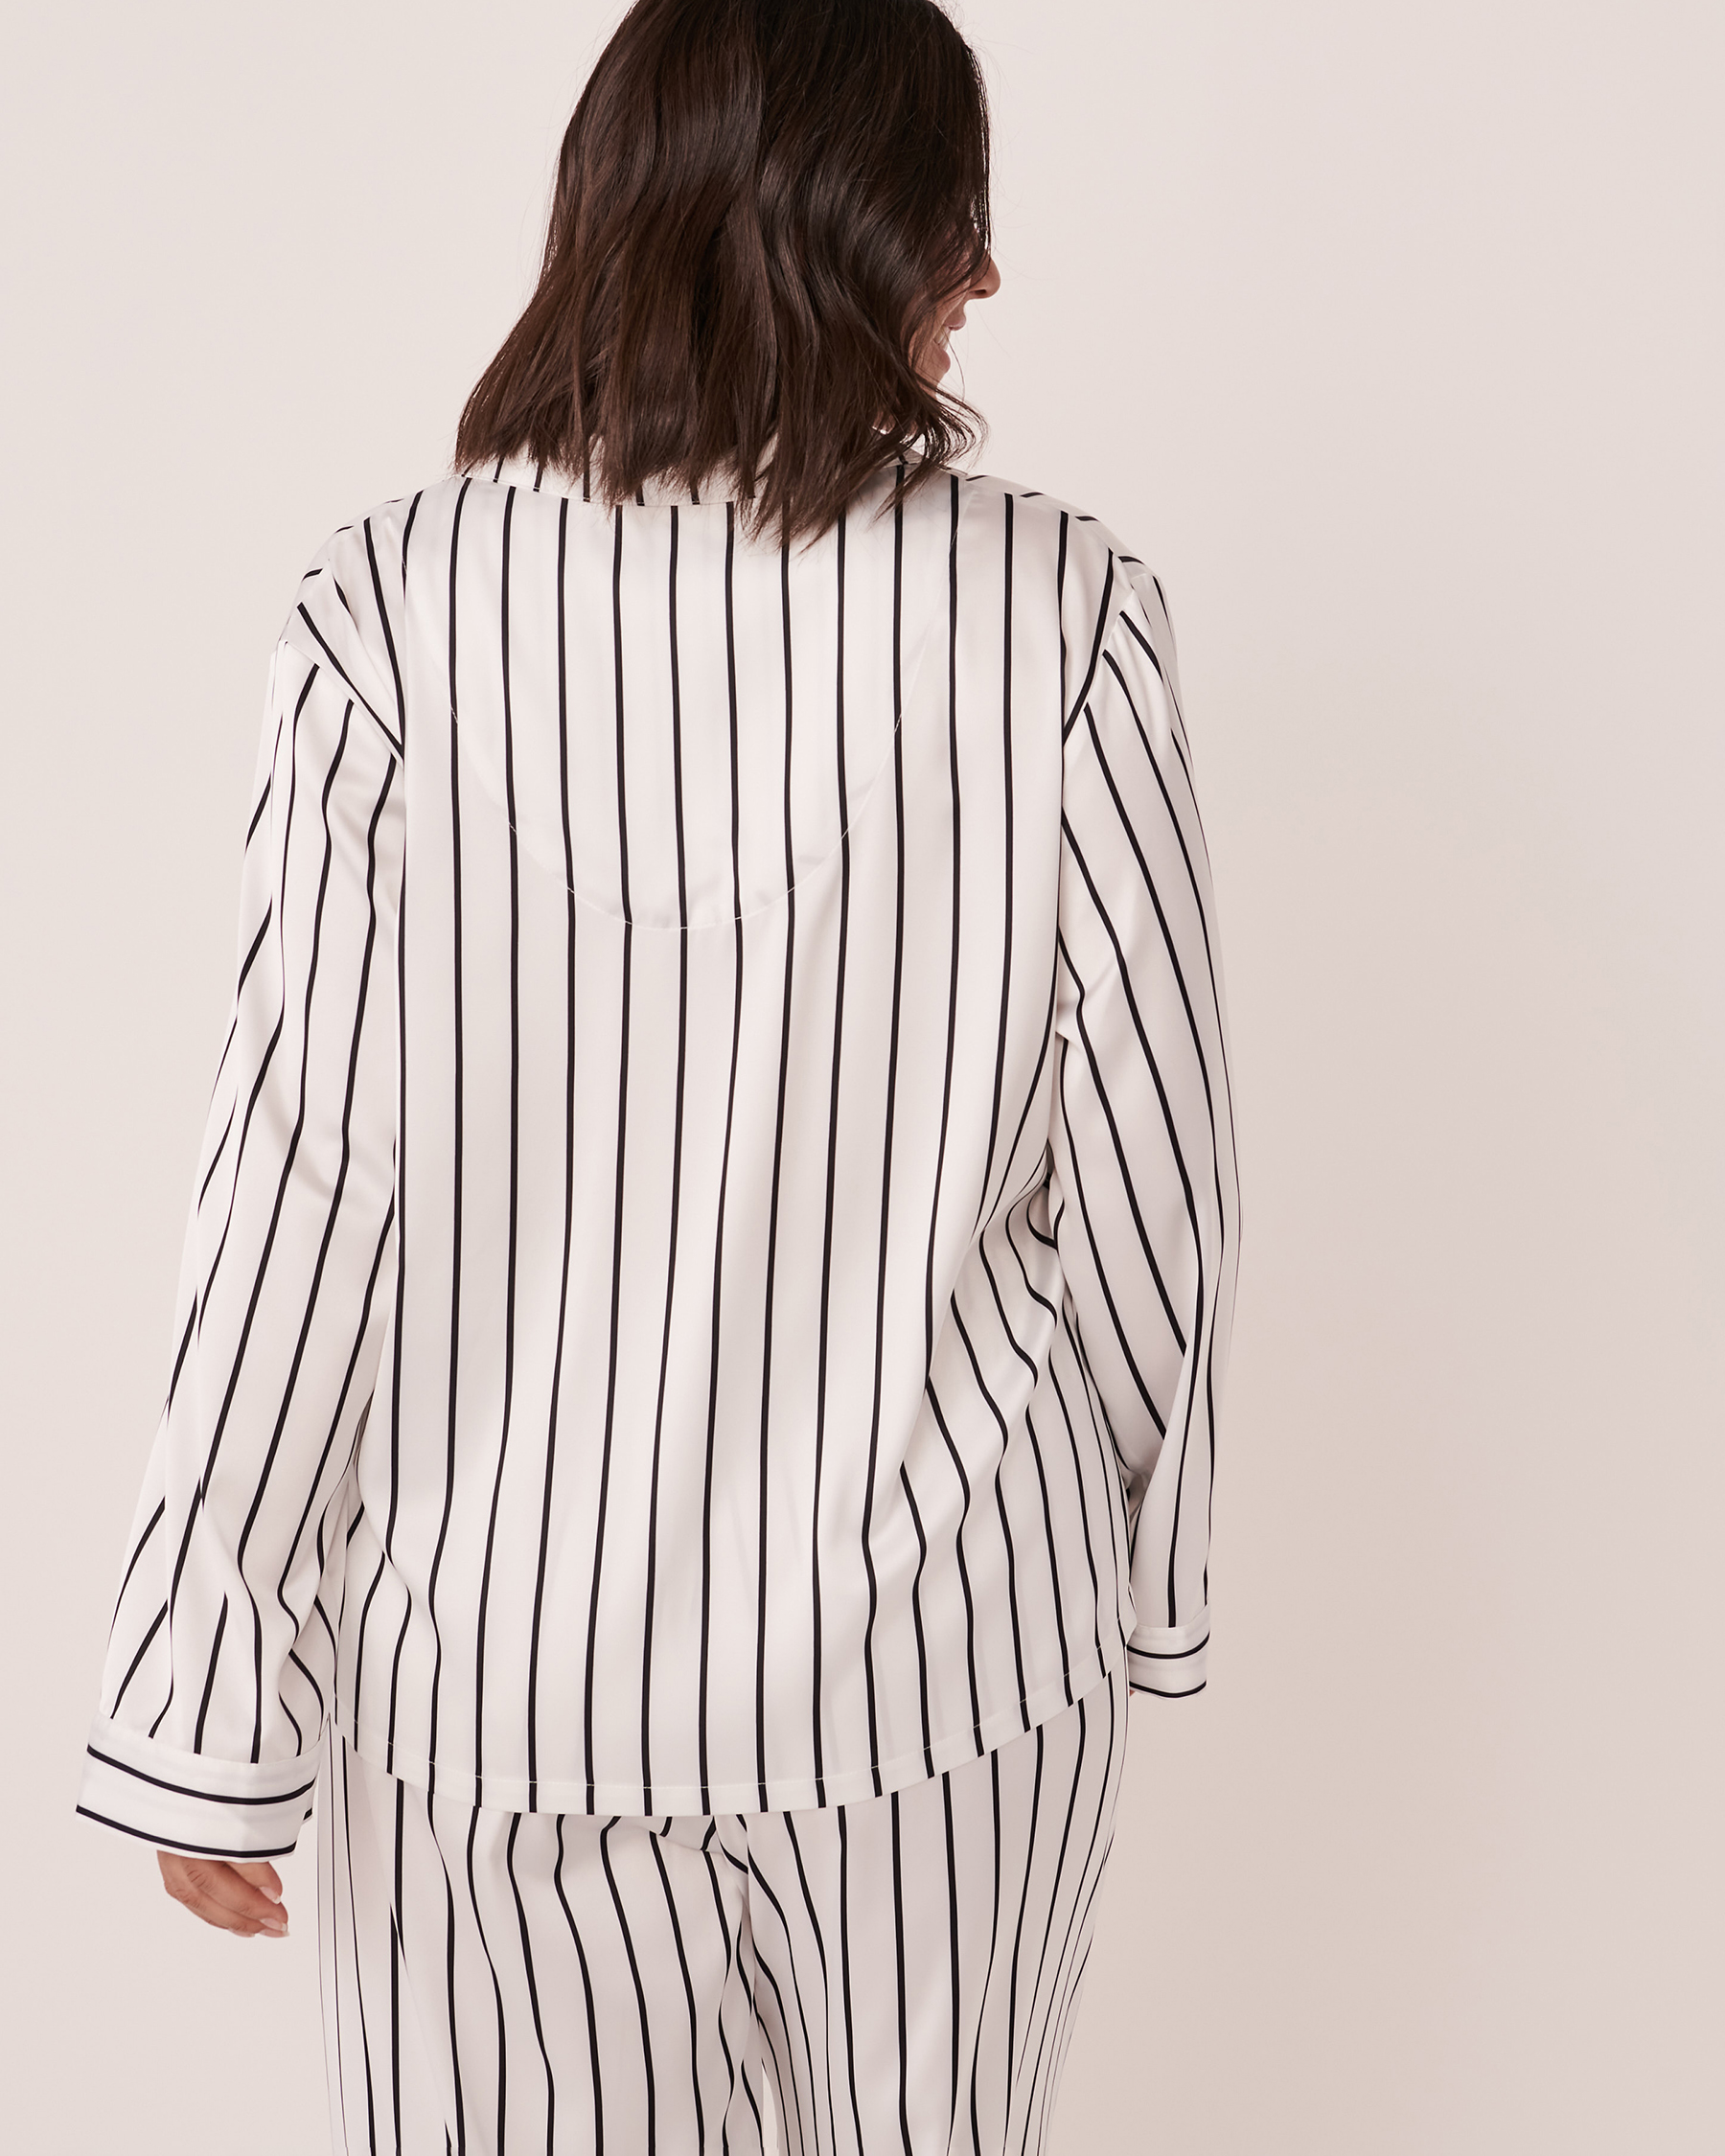 LA VIE EN ROSE Striped Satin Shirt Black and white stripe 60100060 - View6